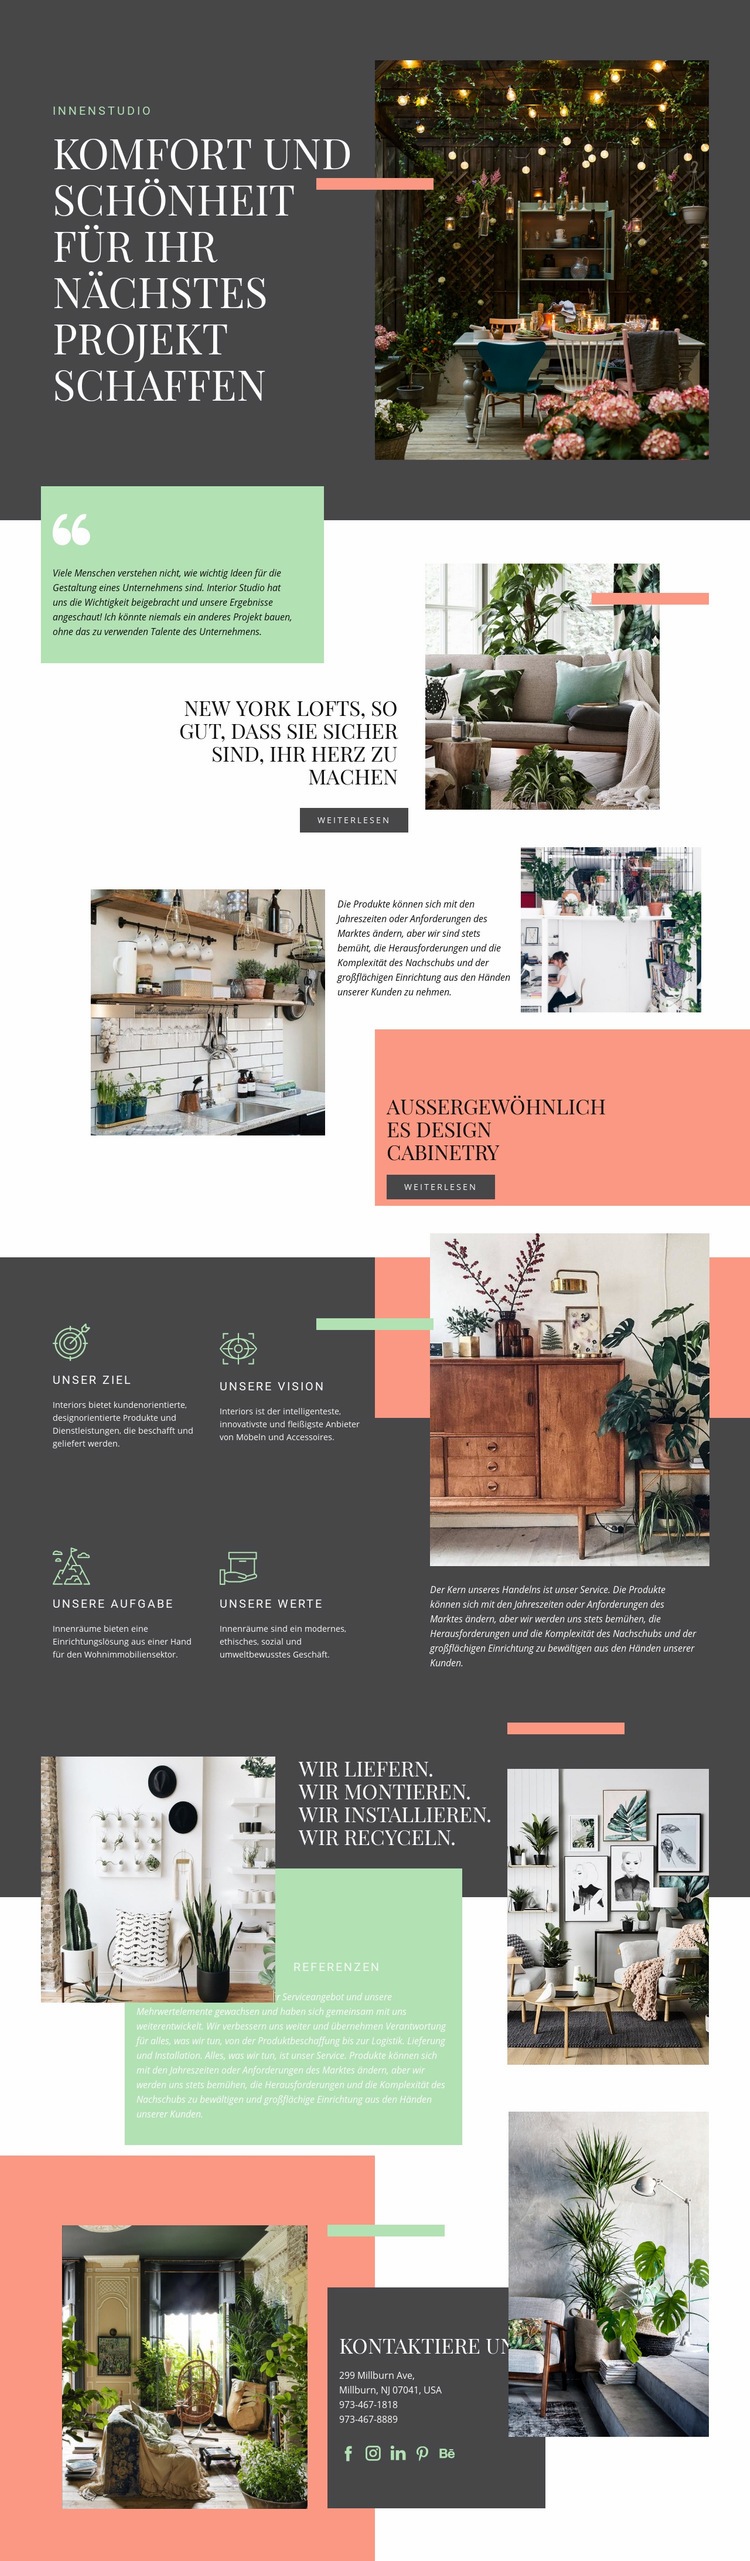 Komfort in Ihrem Zuhause Website design